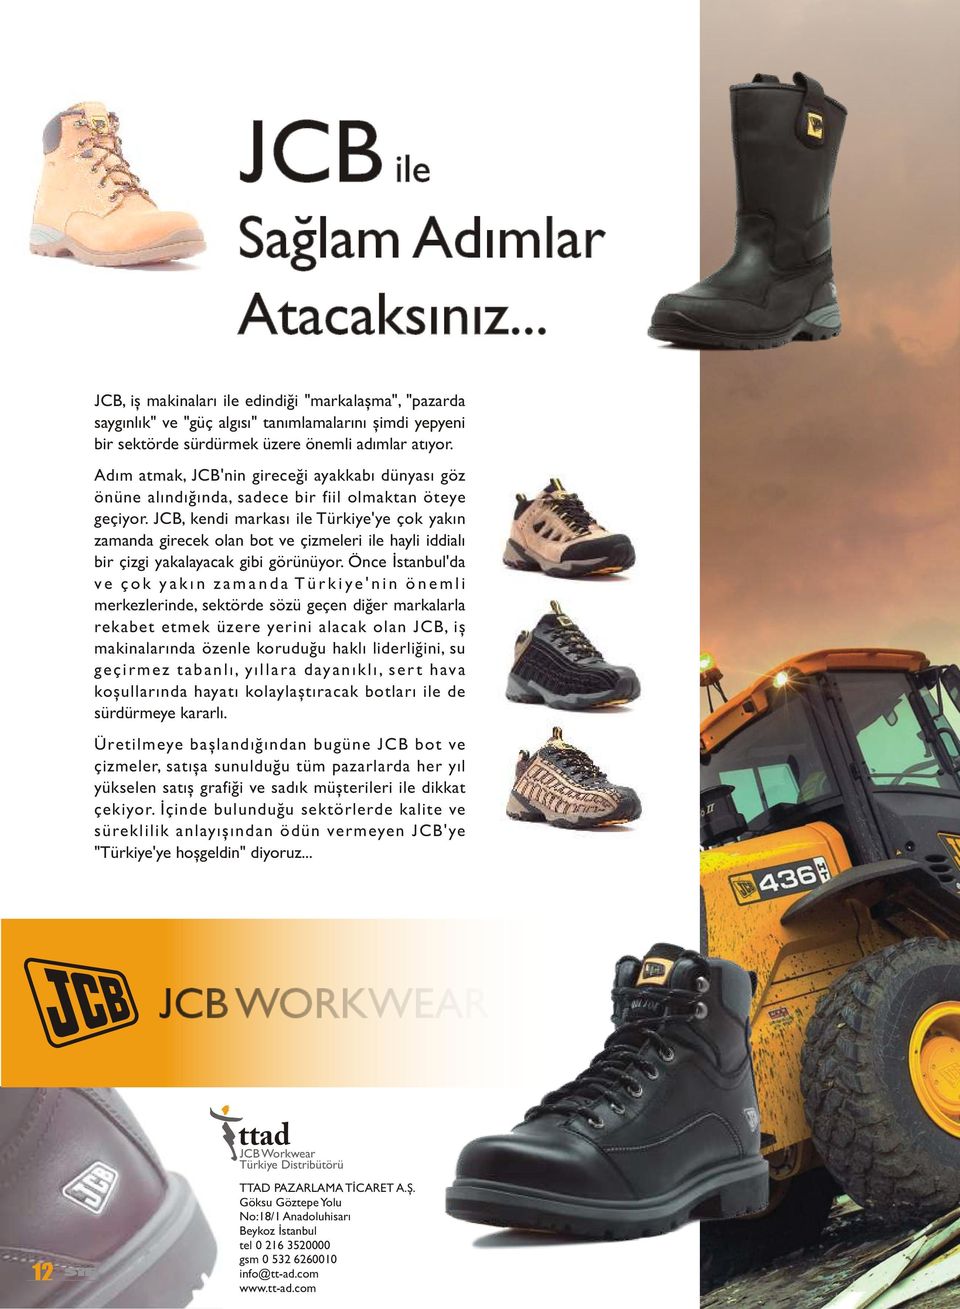 JCB, kendi markasý ile Türkiye'ye çok yakýn zamanda girecek olan bot ve çizmeleri ile hayli iddialý bir çizgi yakalayacak gibi görünüyor.